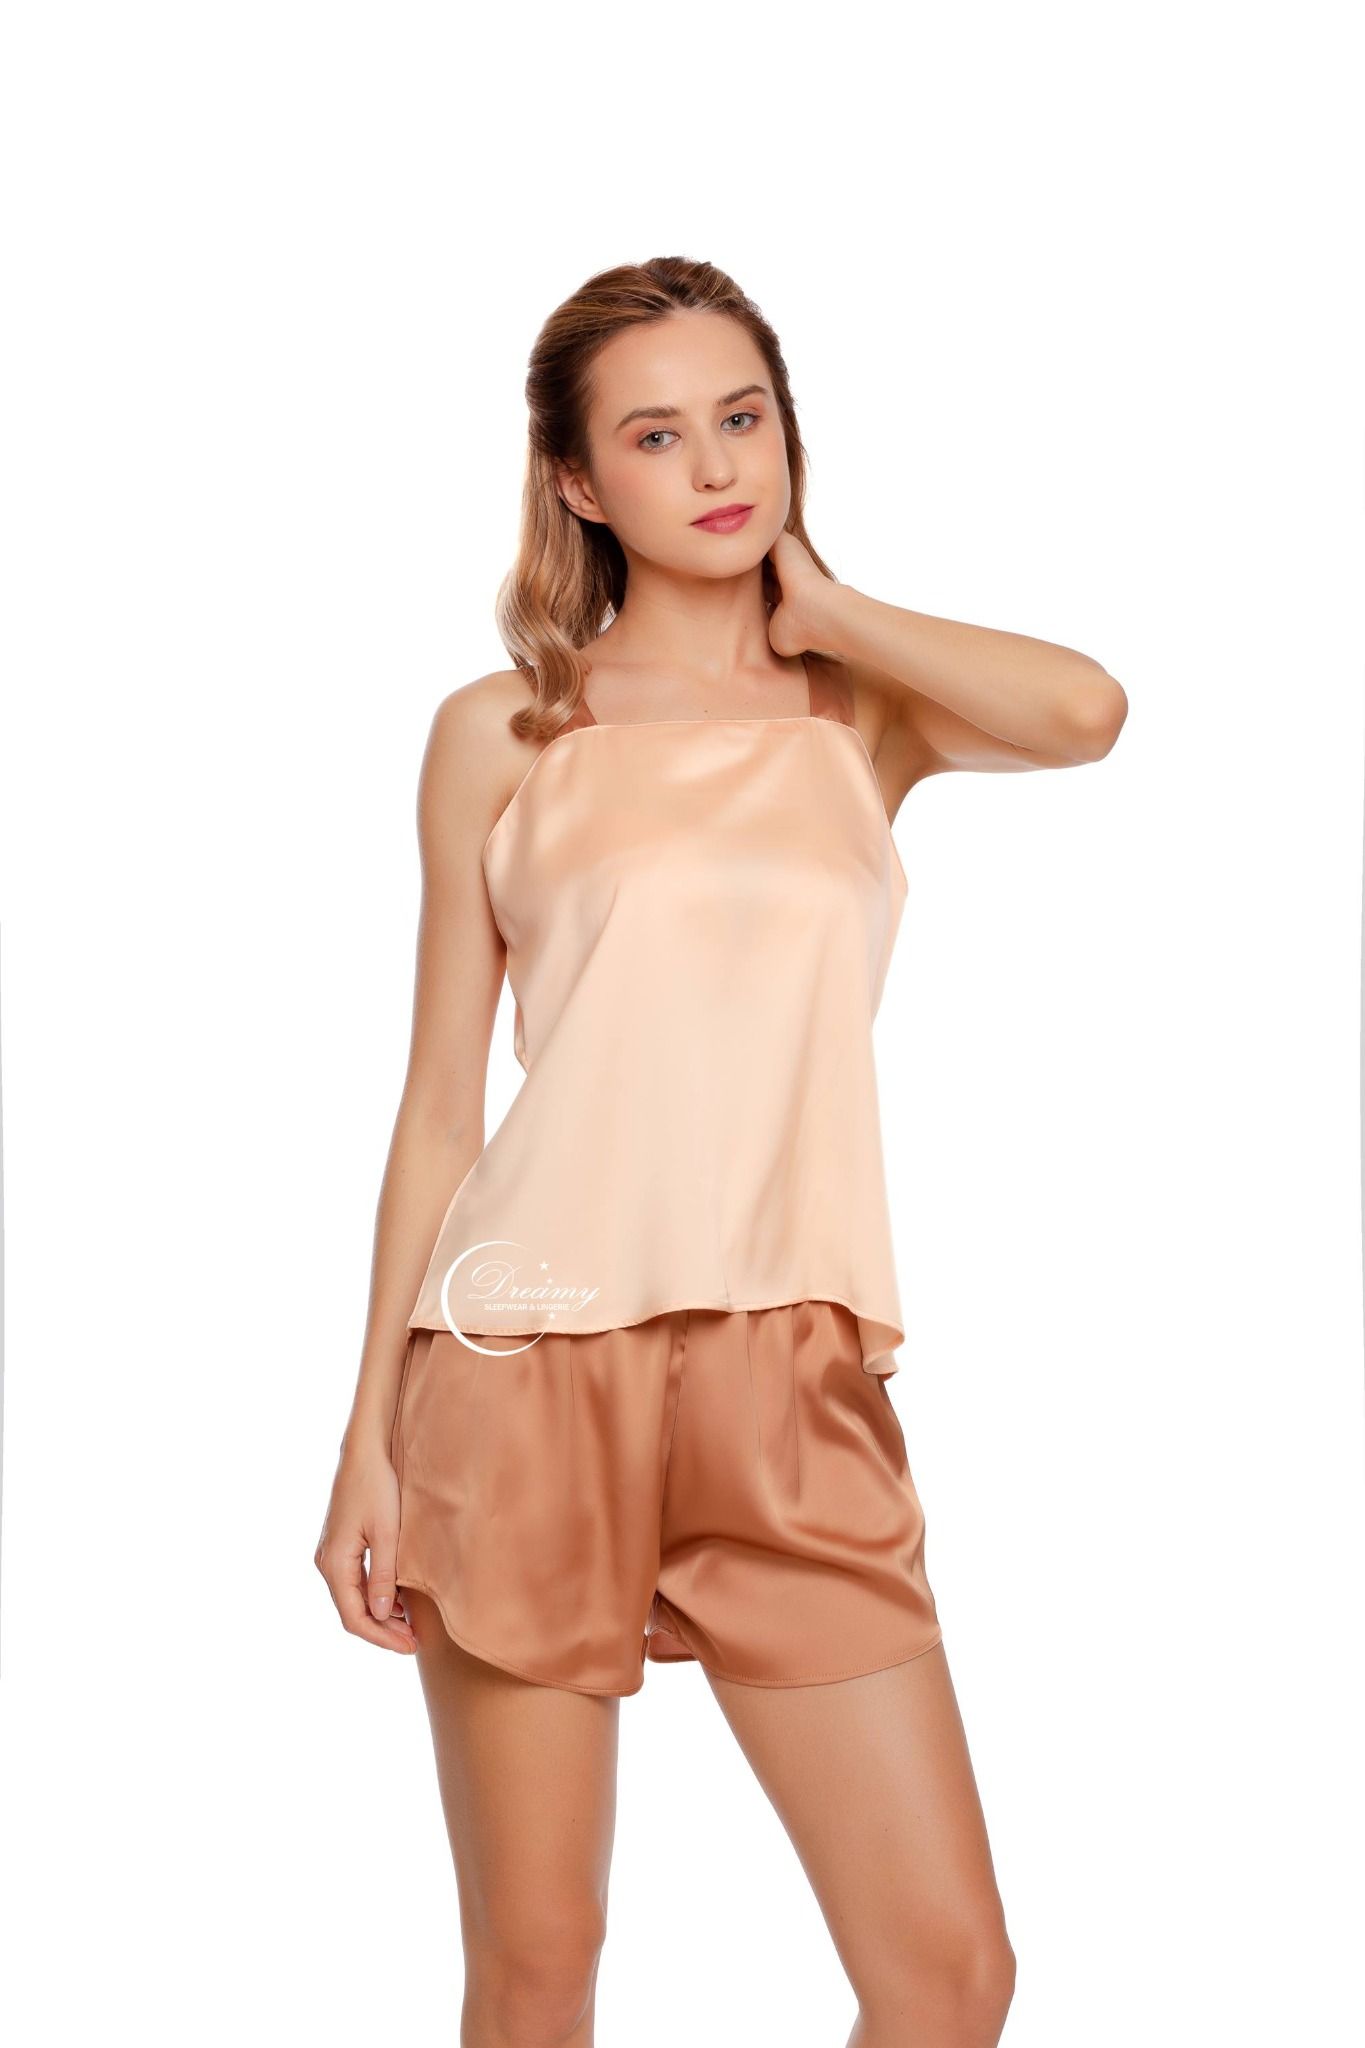  Dreamy- DN22- Đồ bộ quần ngắn áo 2 dây dáng suông nhẹ nhàng nữ tính đồ bộ mặc nhà thoải mái có màu nâu 